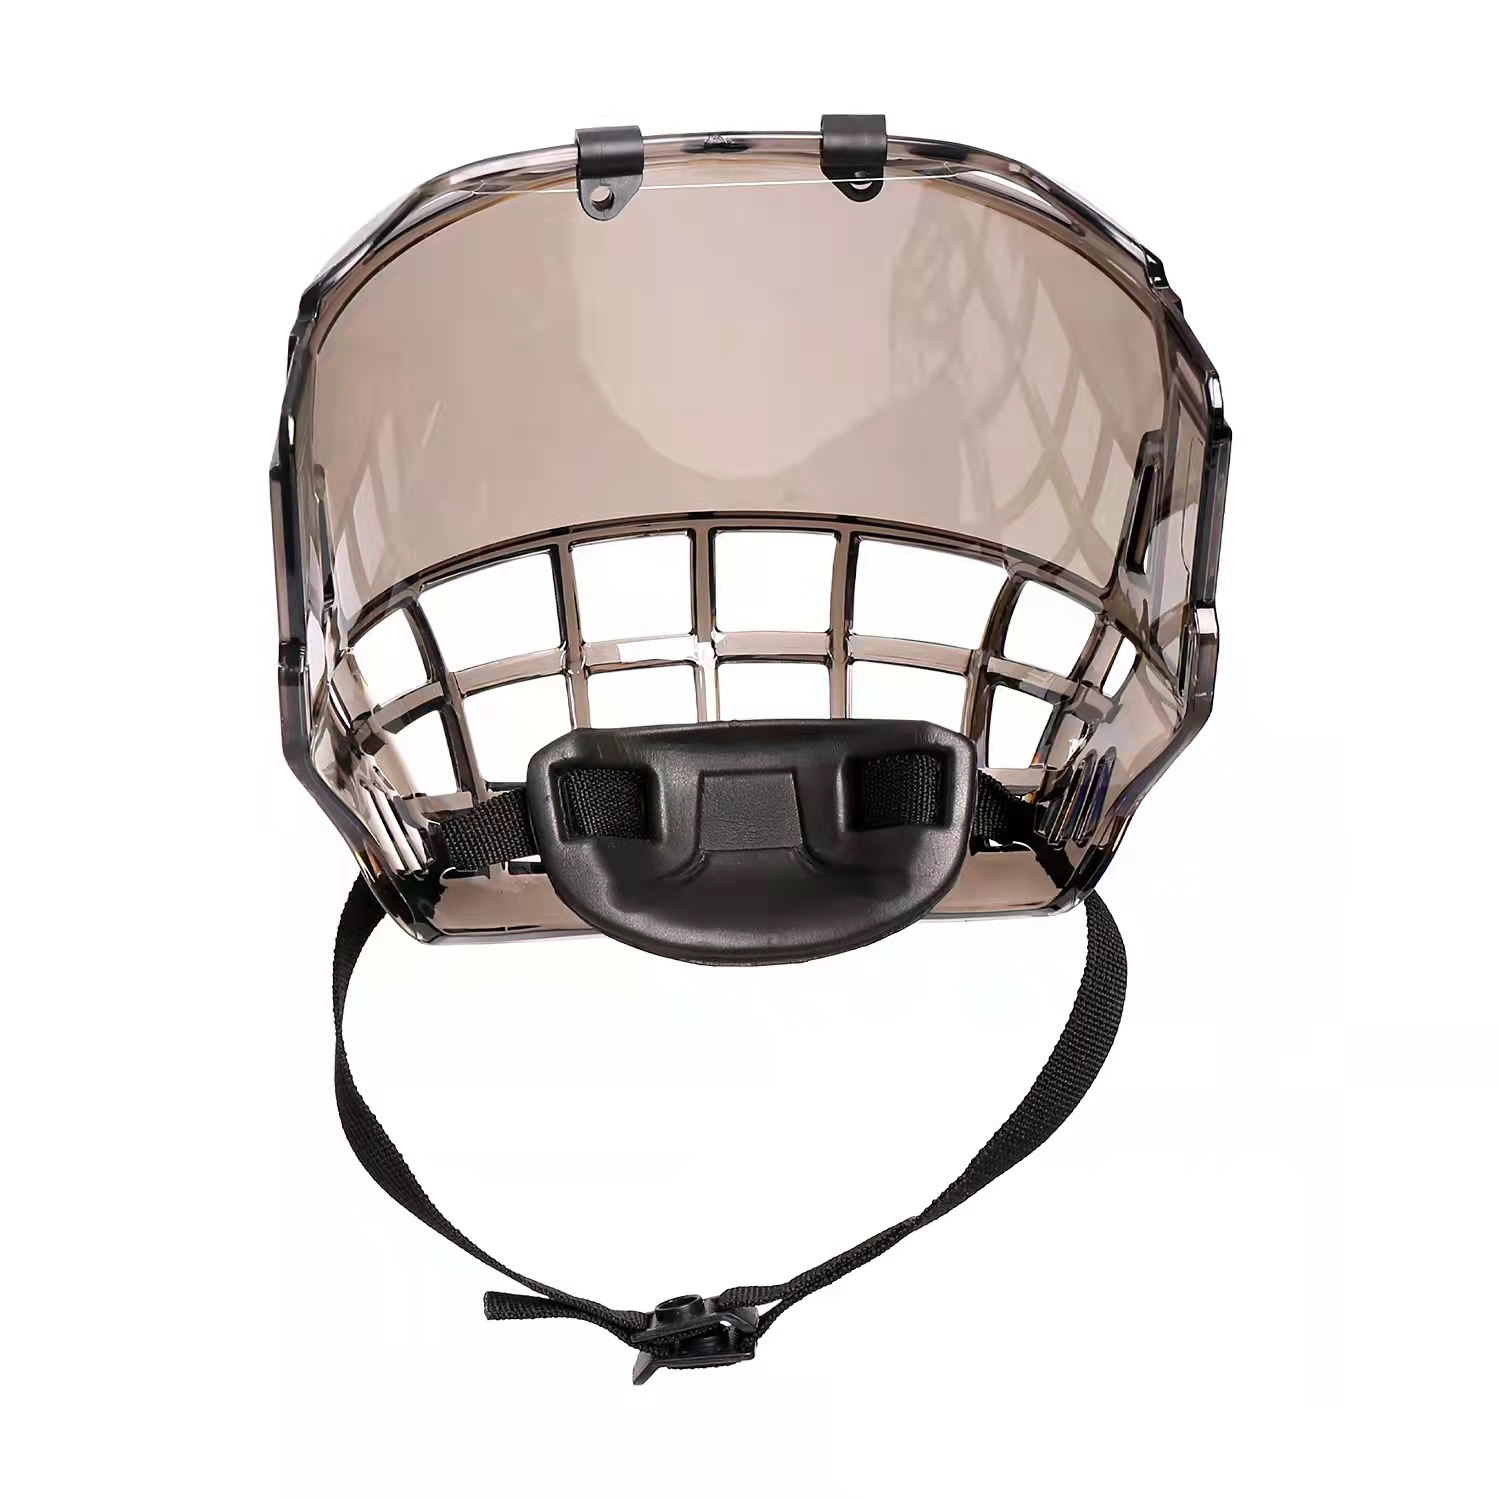 Cage de casque de hockey sur glace de sécurité de qualité supérieure